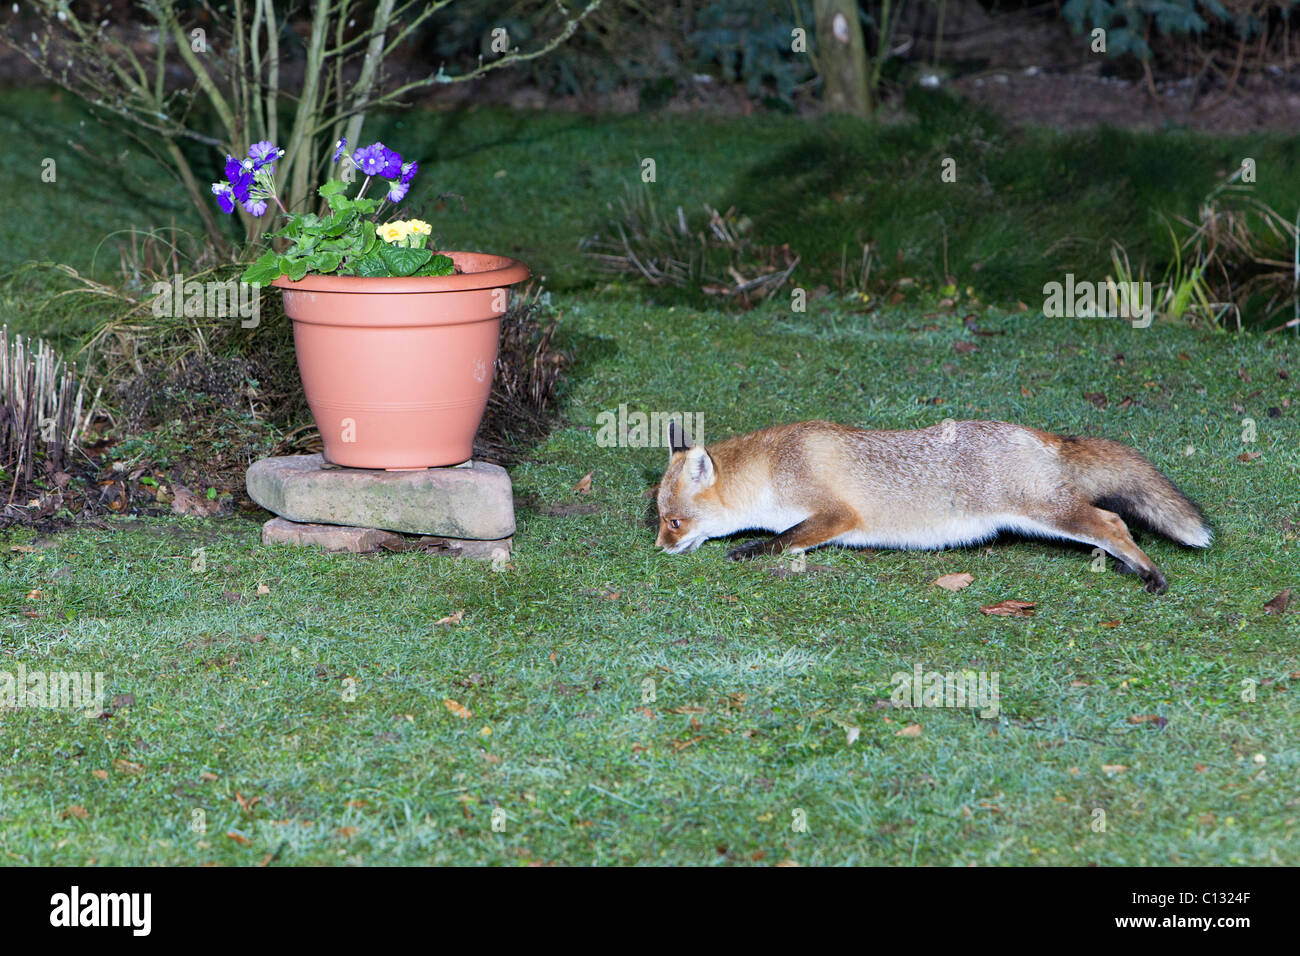 Unión el zorro (Vulpes vulpes), en el jardín, en busca de alimentos Foto de stock